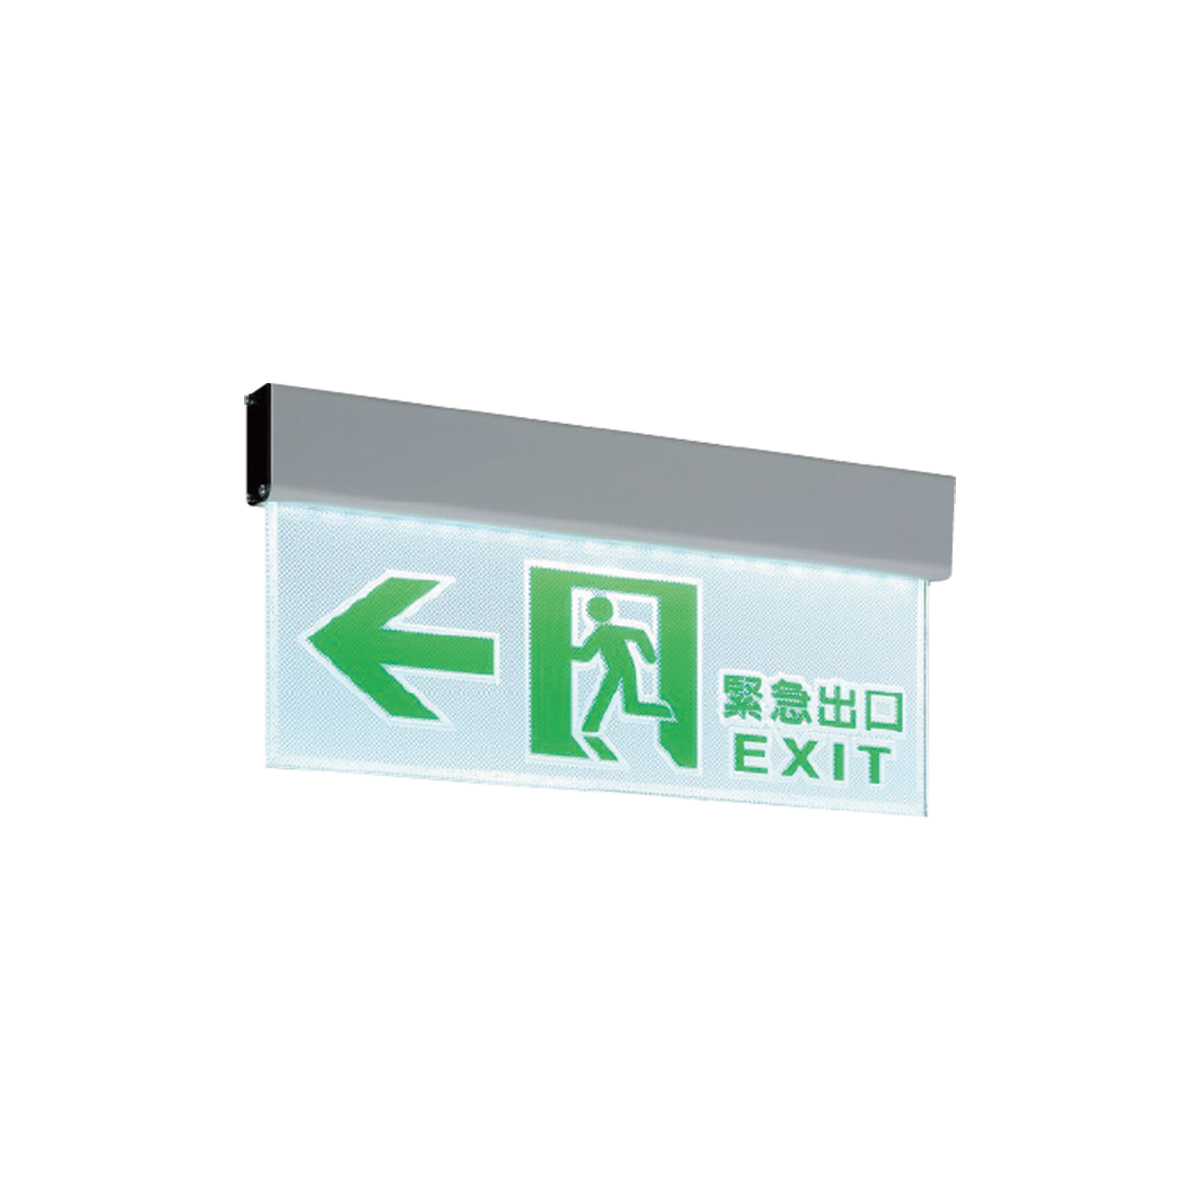 【舞光】LED 壁掛式出口方向指示燈 緊急照明燈 全電壓